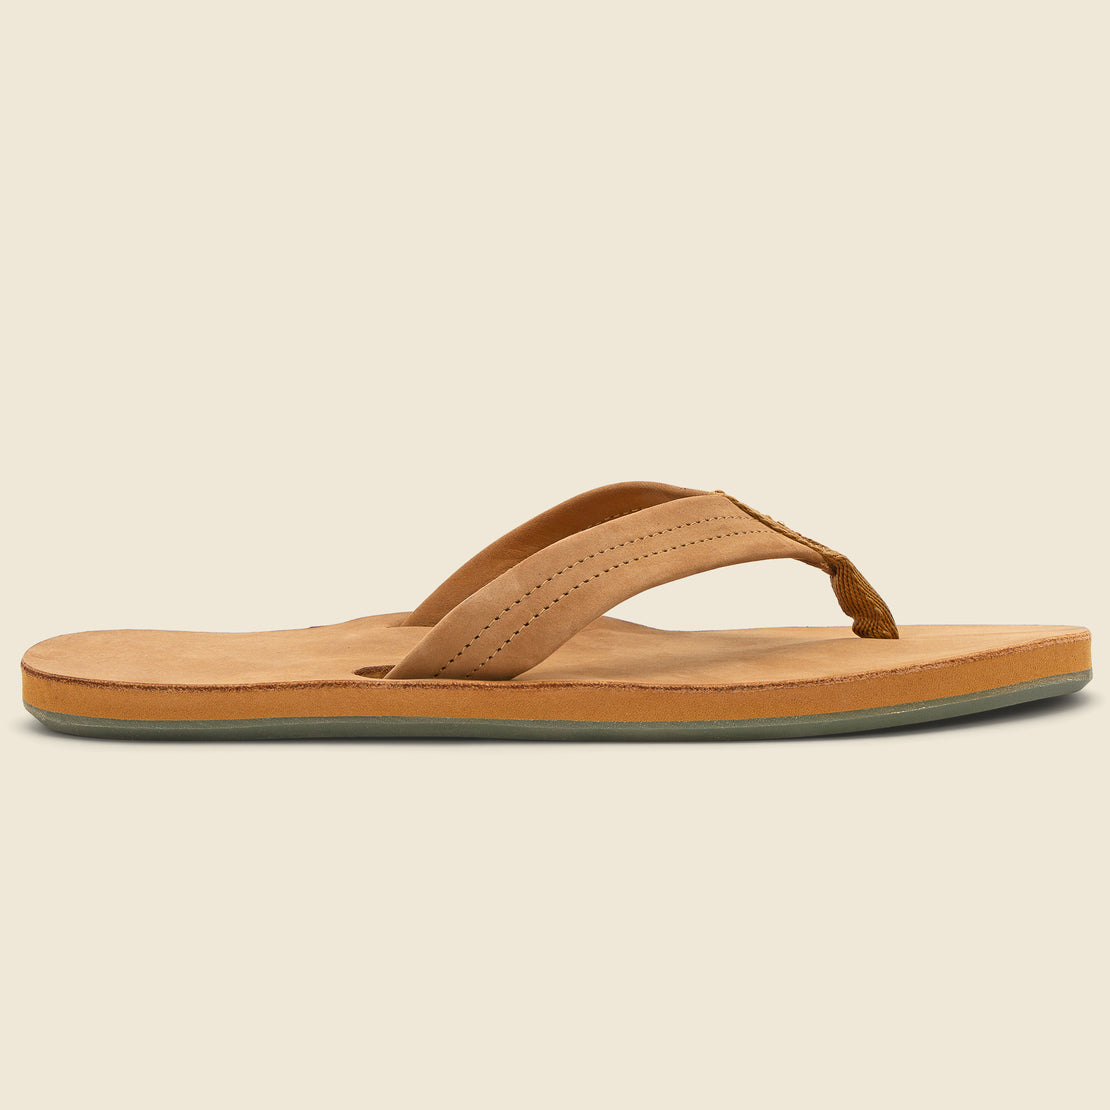 Leather Flip Flop Sandals Tan